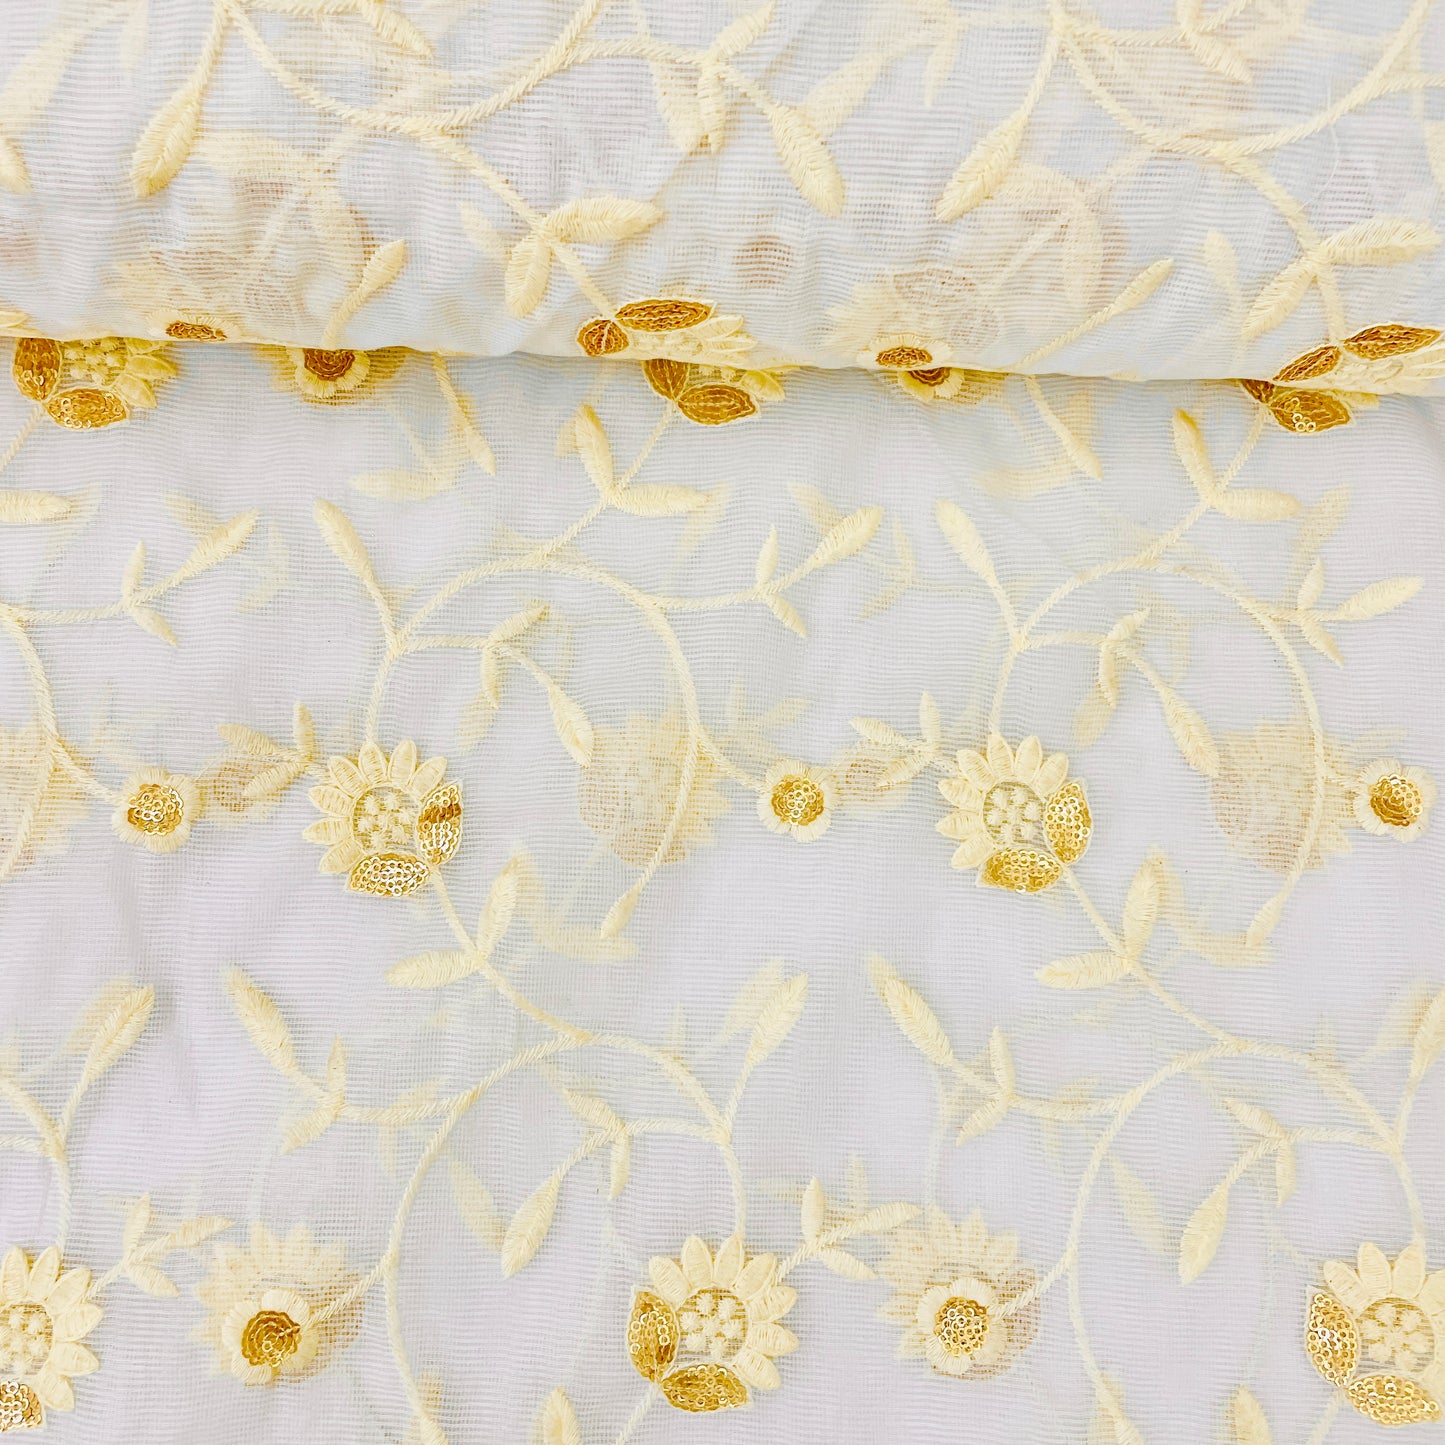 White Thread Embrodiery Kota Cotton Fabric - TradeUNO